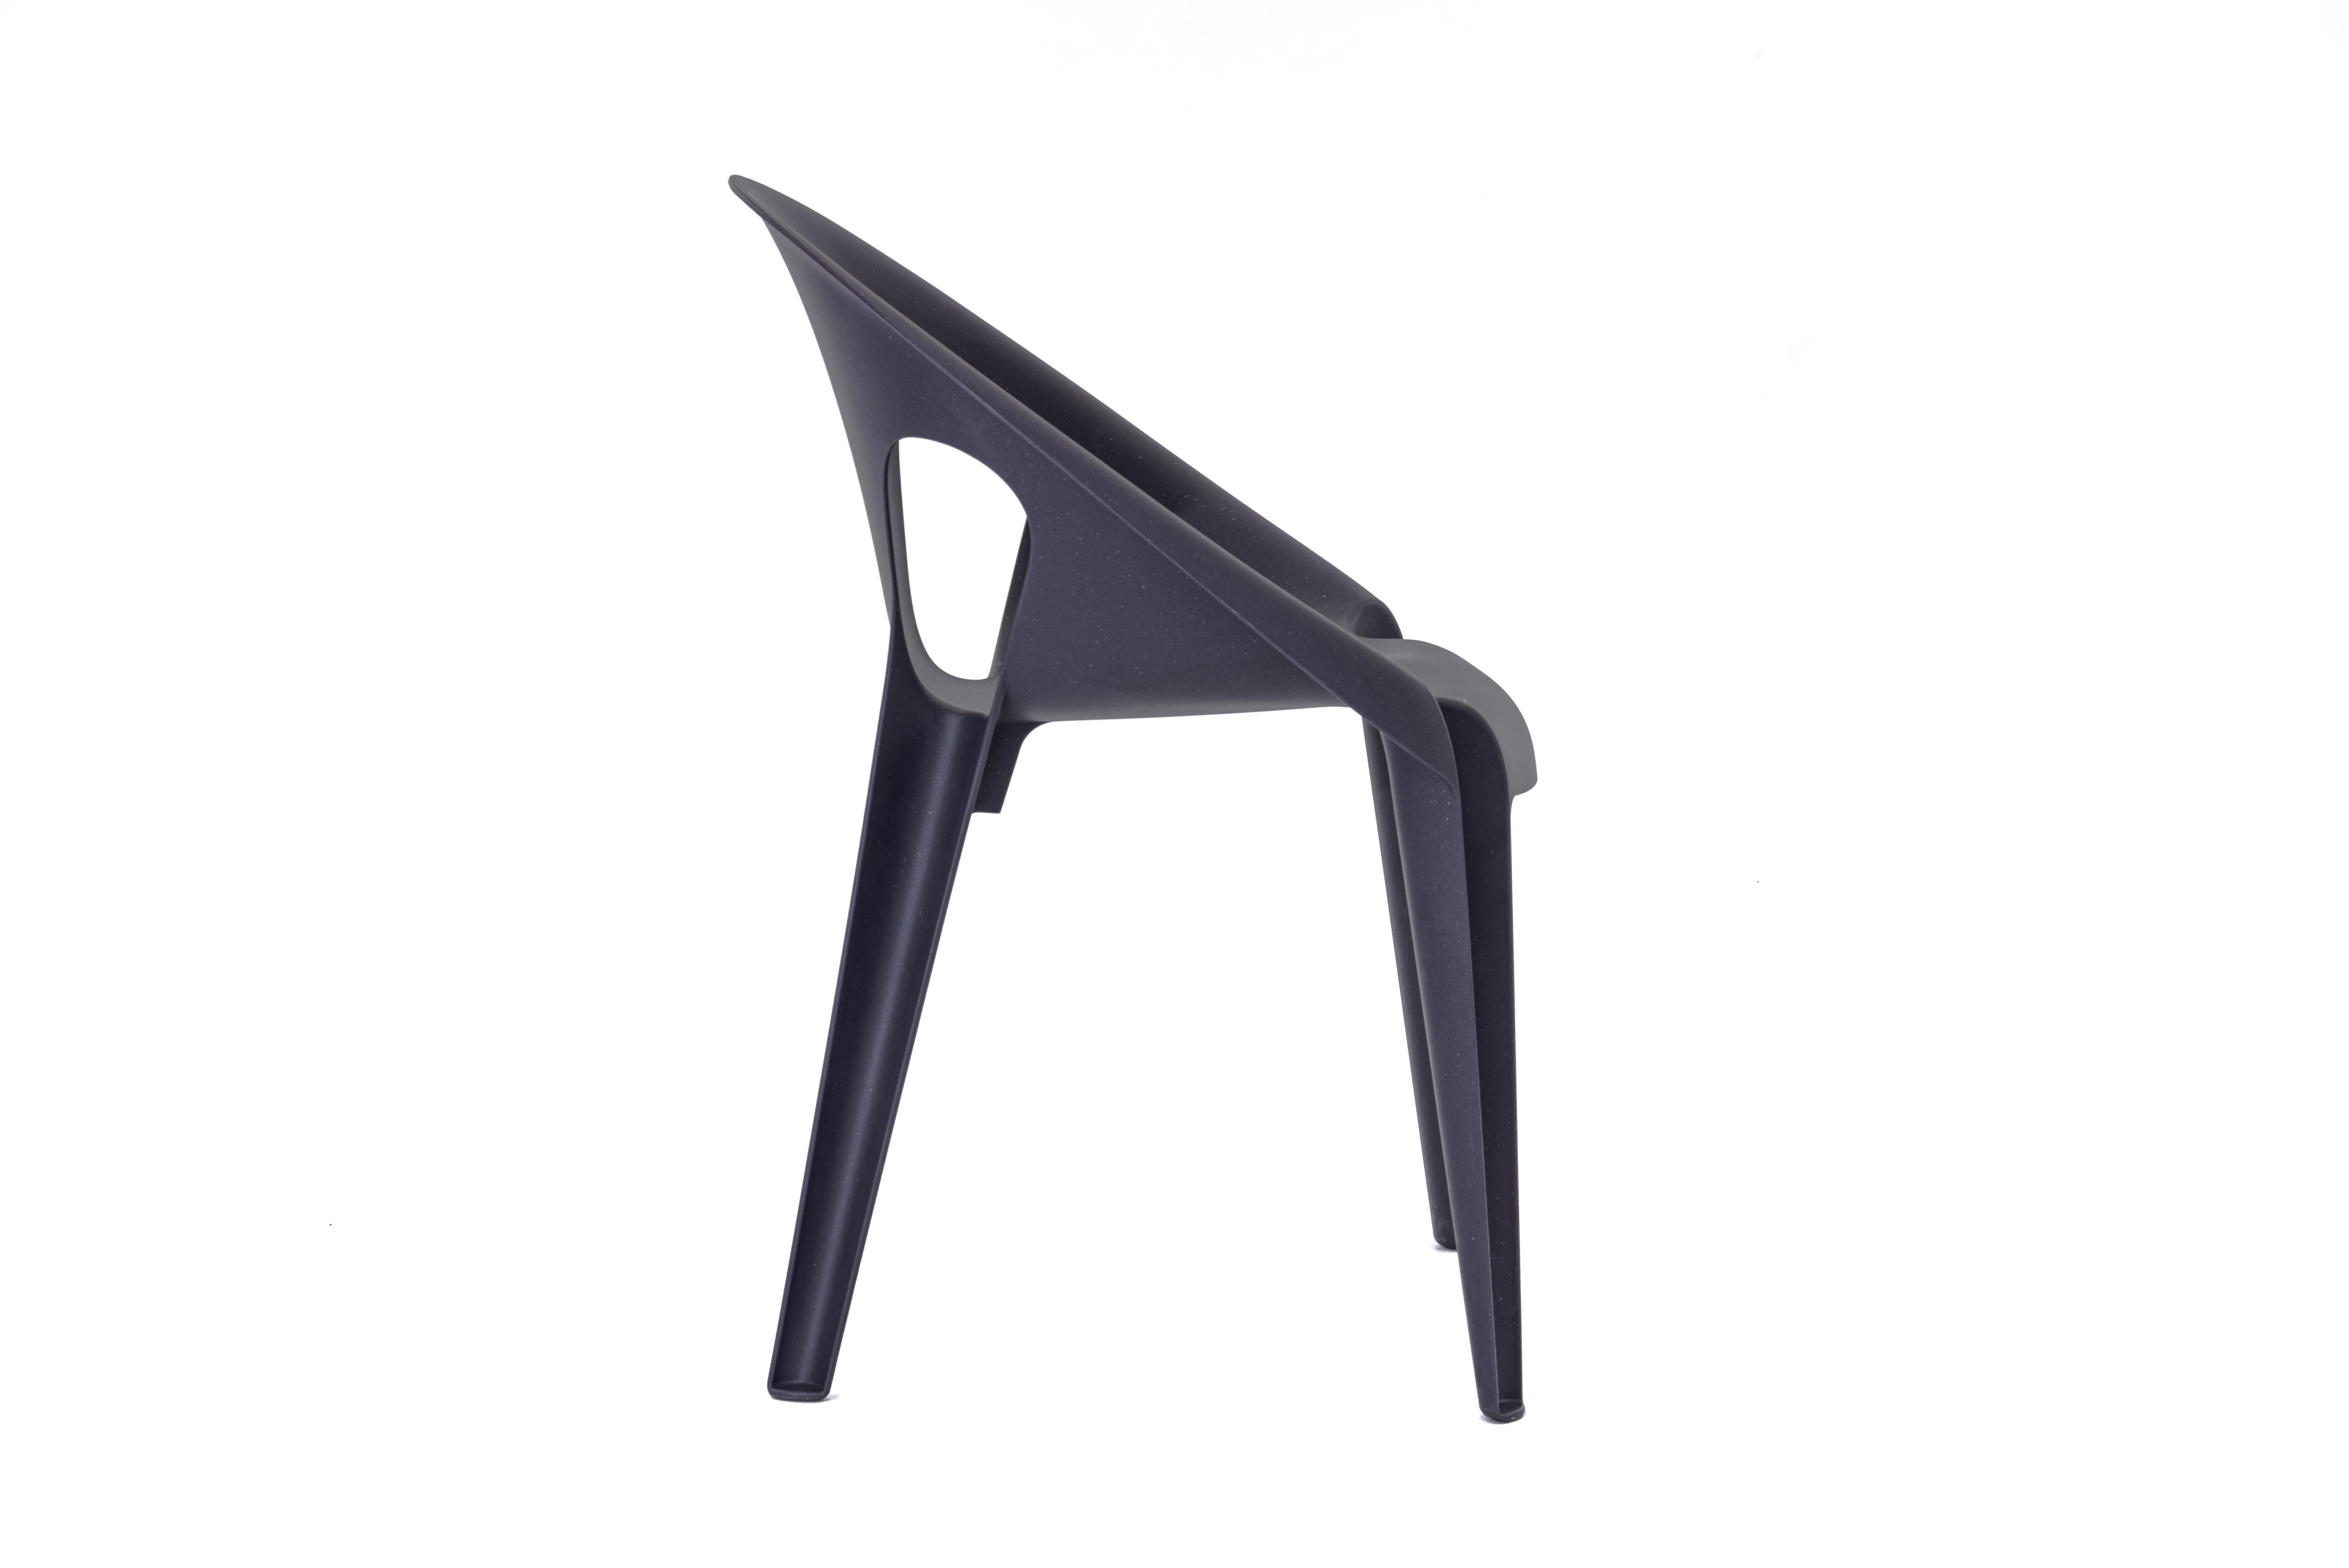 Bell ist nicht nur ein Monoblock-Stuhl. Es ist ein Symbol der Verantwortung.
Bell Chair ist in vier Farben erhältlich - Sunrise, High Noon, Midnight und Dawn. Es wird aus recyceltem Polypropylen hergestellt, das aus den Abfällen der